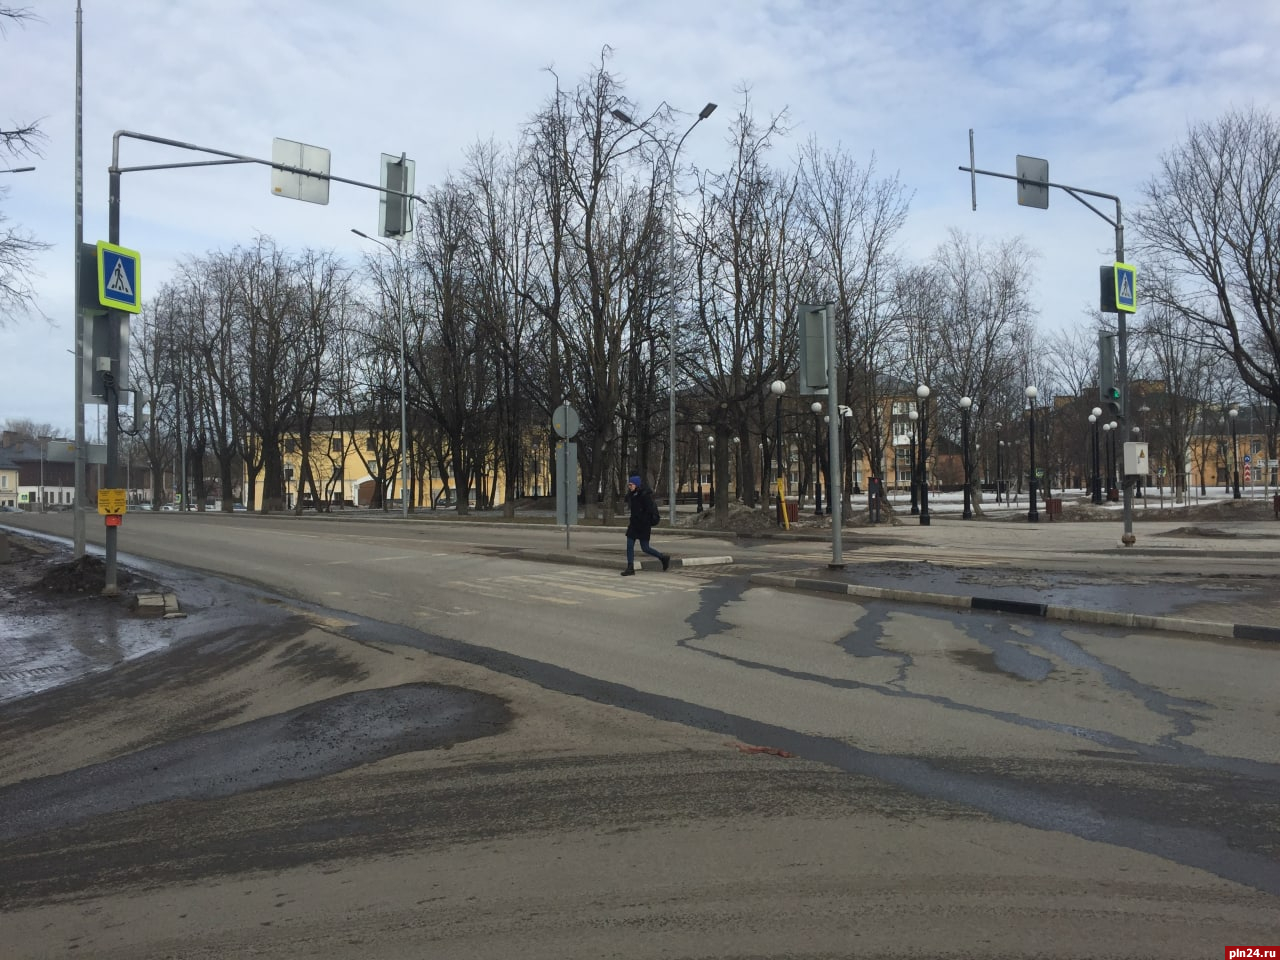 Автолюбители предлагают отключить ряд светофоров на улице Поземского в Пскове